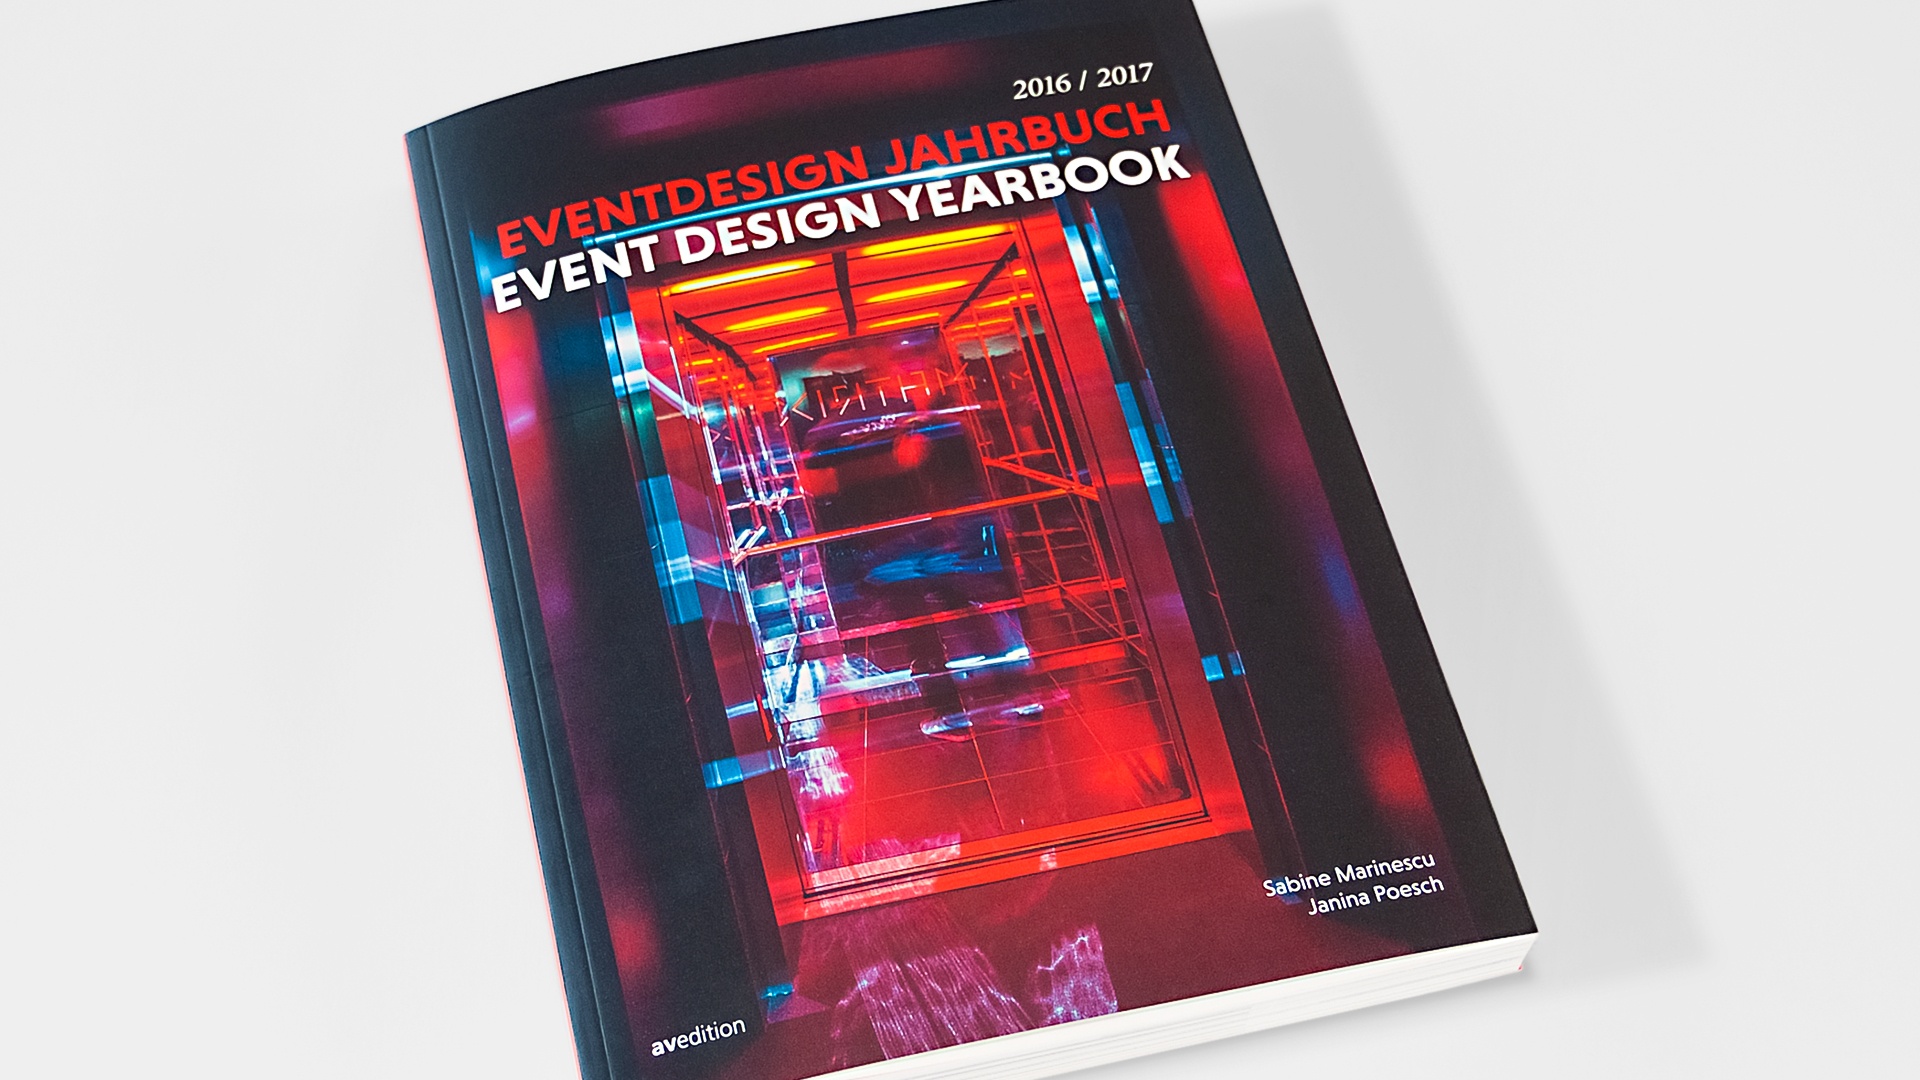 Eventdesign Jahrbuch 2016/2017